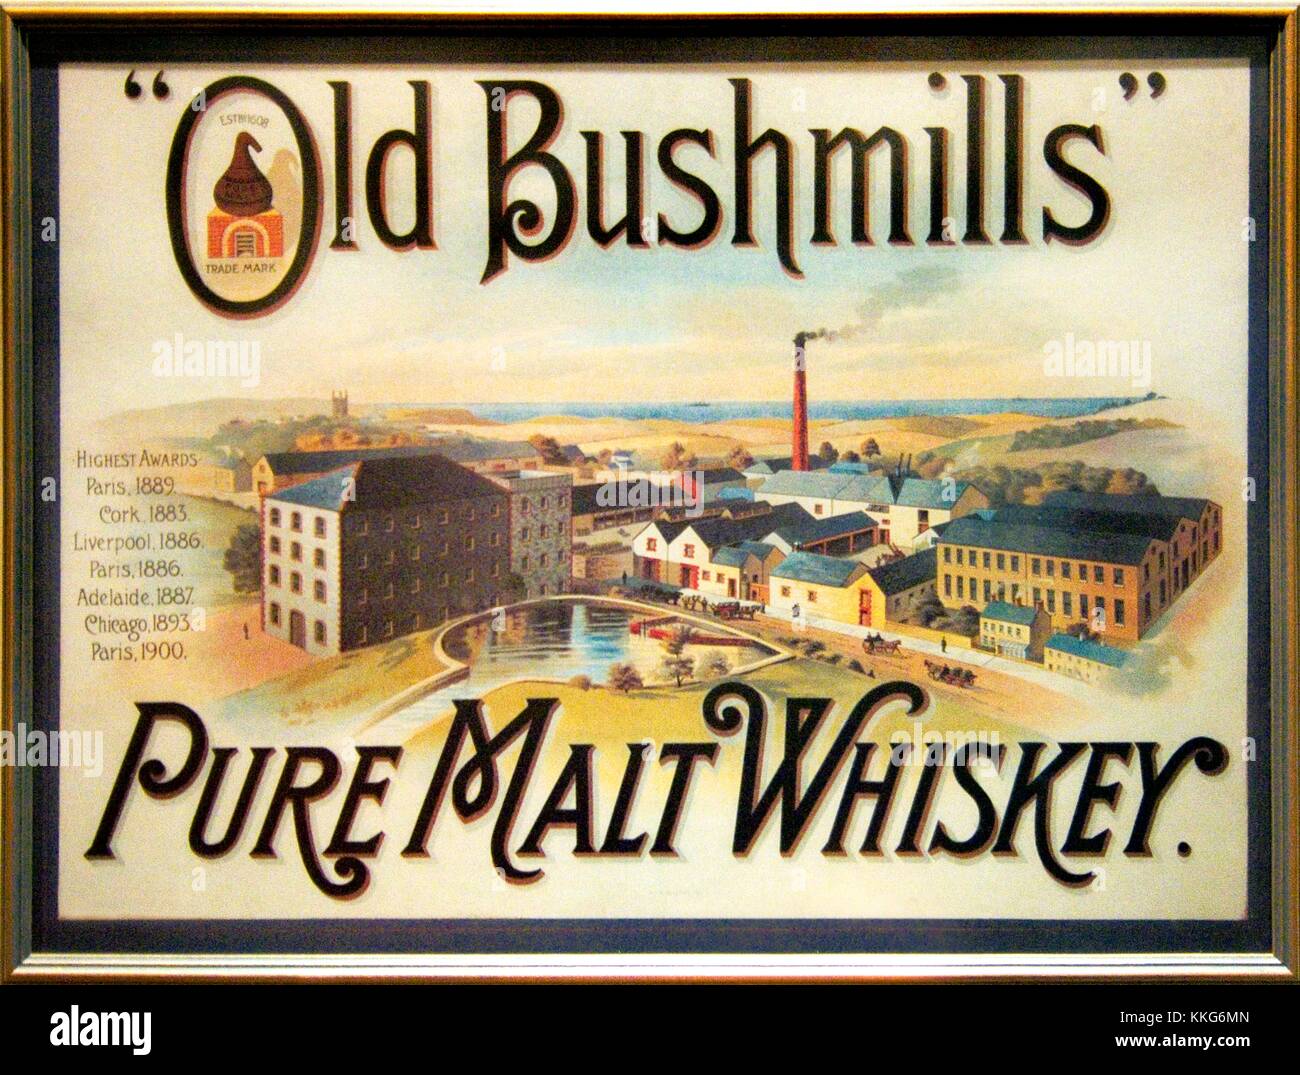 Old Bushmills Irish whiskey vieille affiche publicitaire. Le comté d'Antrim, en Irlande. plus ancienne distillerie. licence accordée en 1608. Banque D'Images